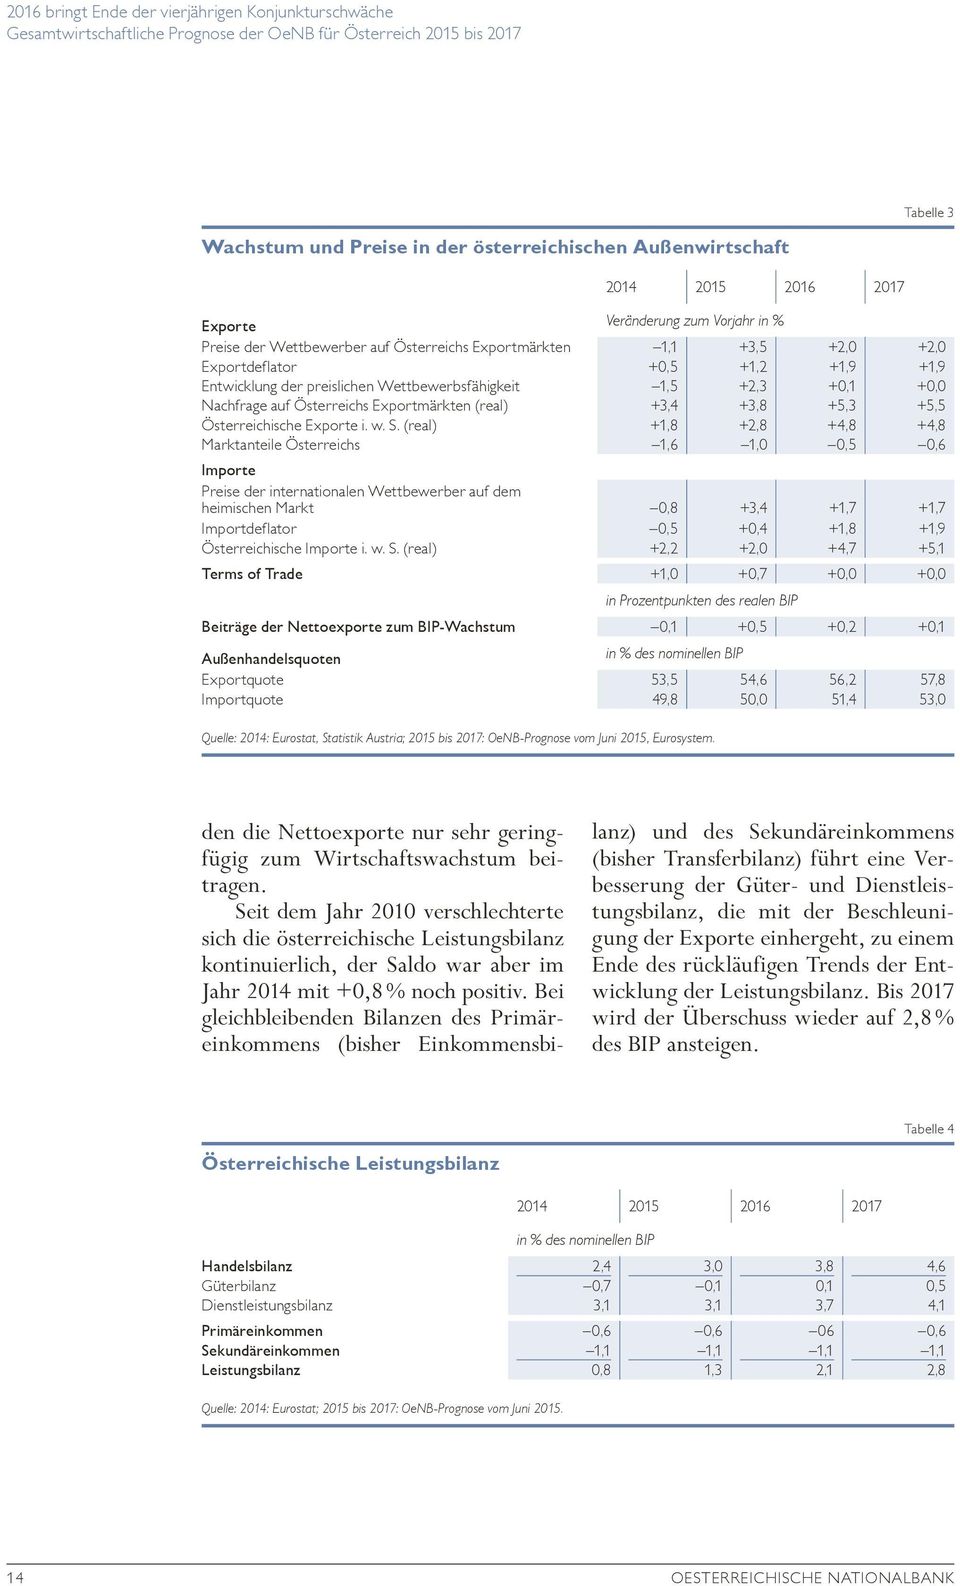 (real) +,8 +2,8 +4,8 +4,8 Marktanteile Österreichs,6,0 0,5 0,6 Importe Preise der internationalen Wettbewerber auf dem heimischen Markt 0,8 +3,4 +,7 +,7 Importdeflator 0,5 +0,4 +,8 +,9